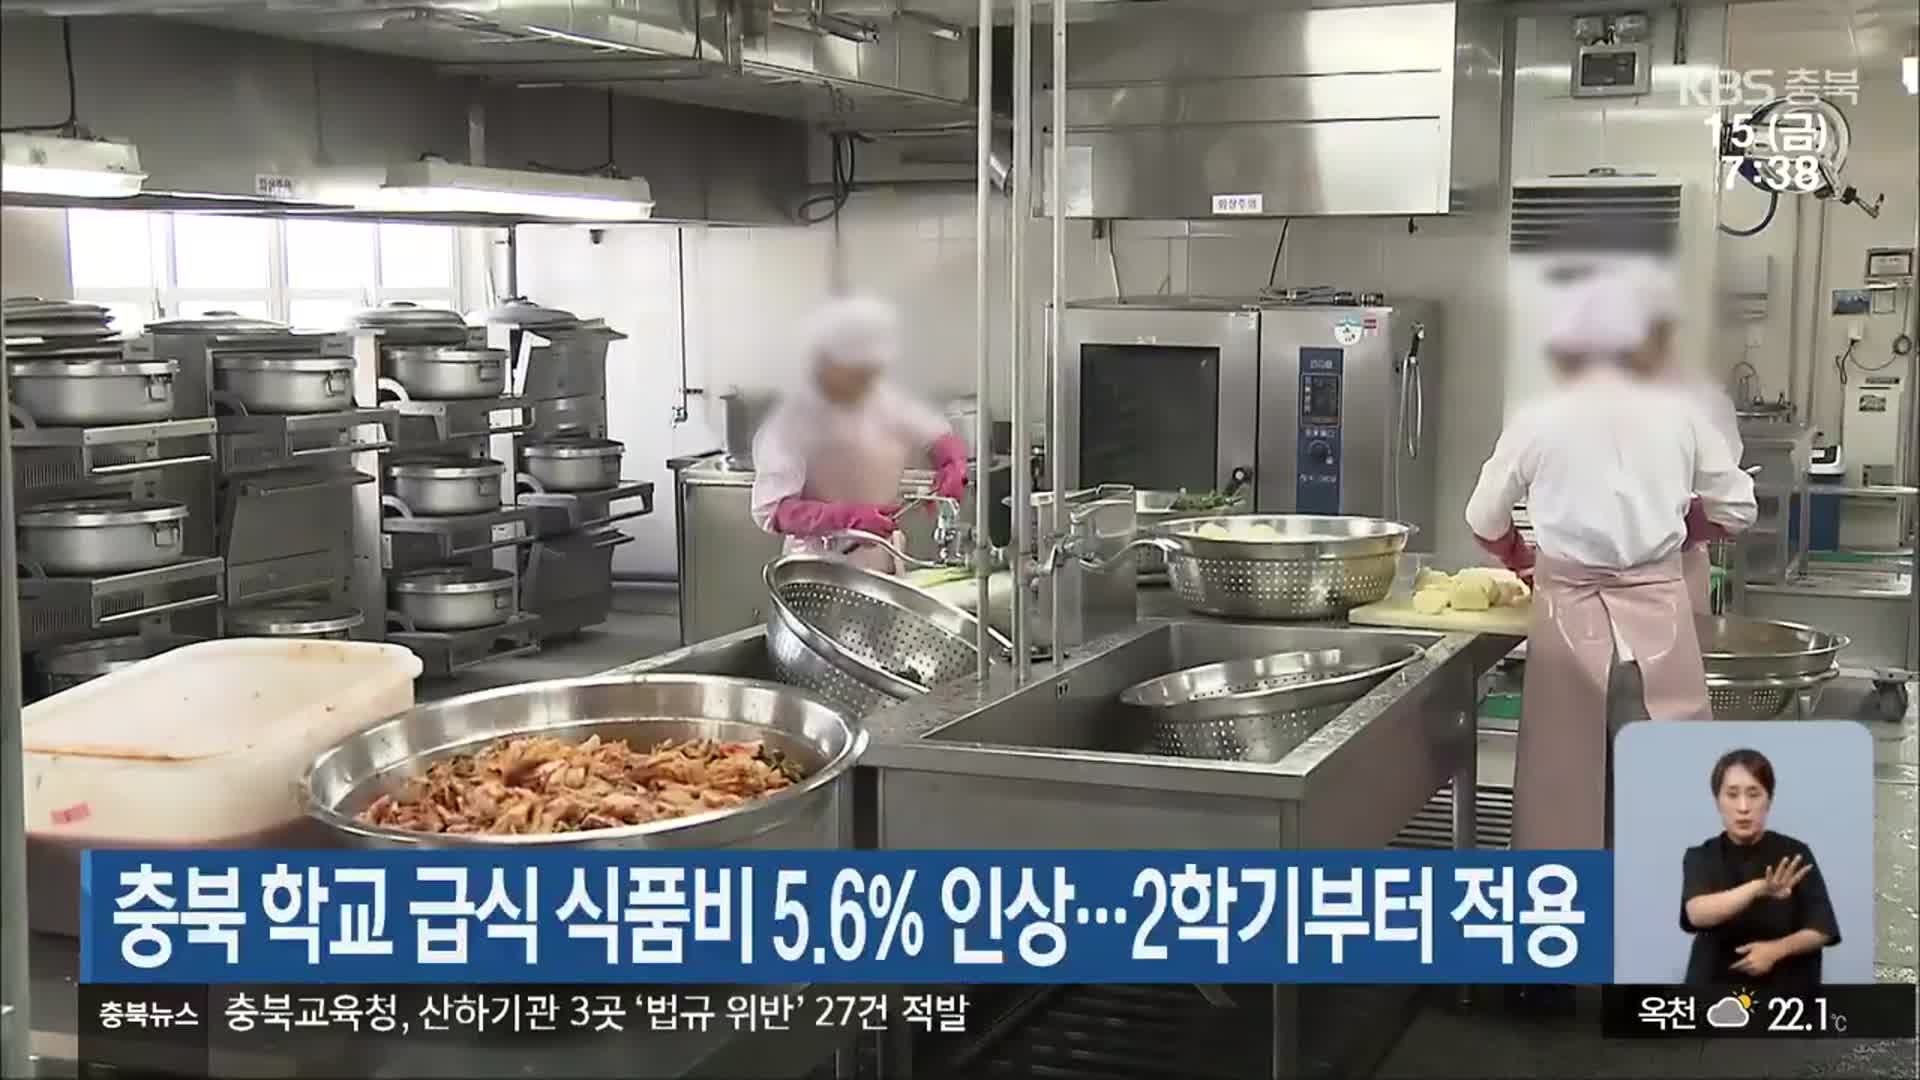 충북 학교 급식 식품비 5.6% 인상…2학기부터 적용